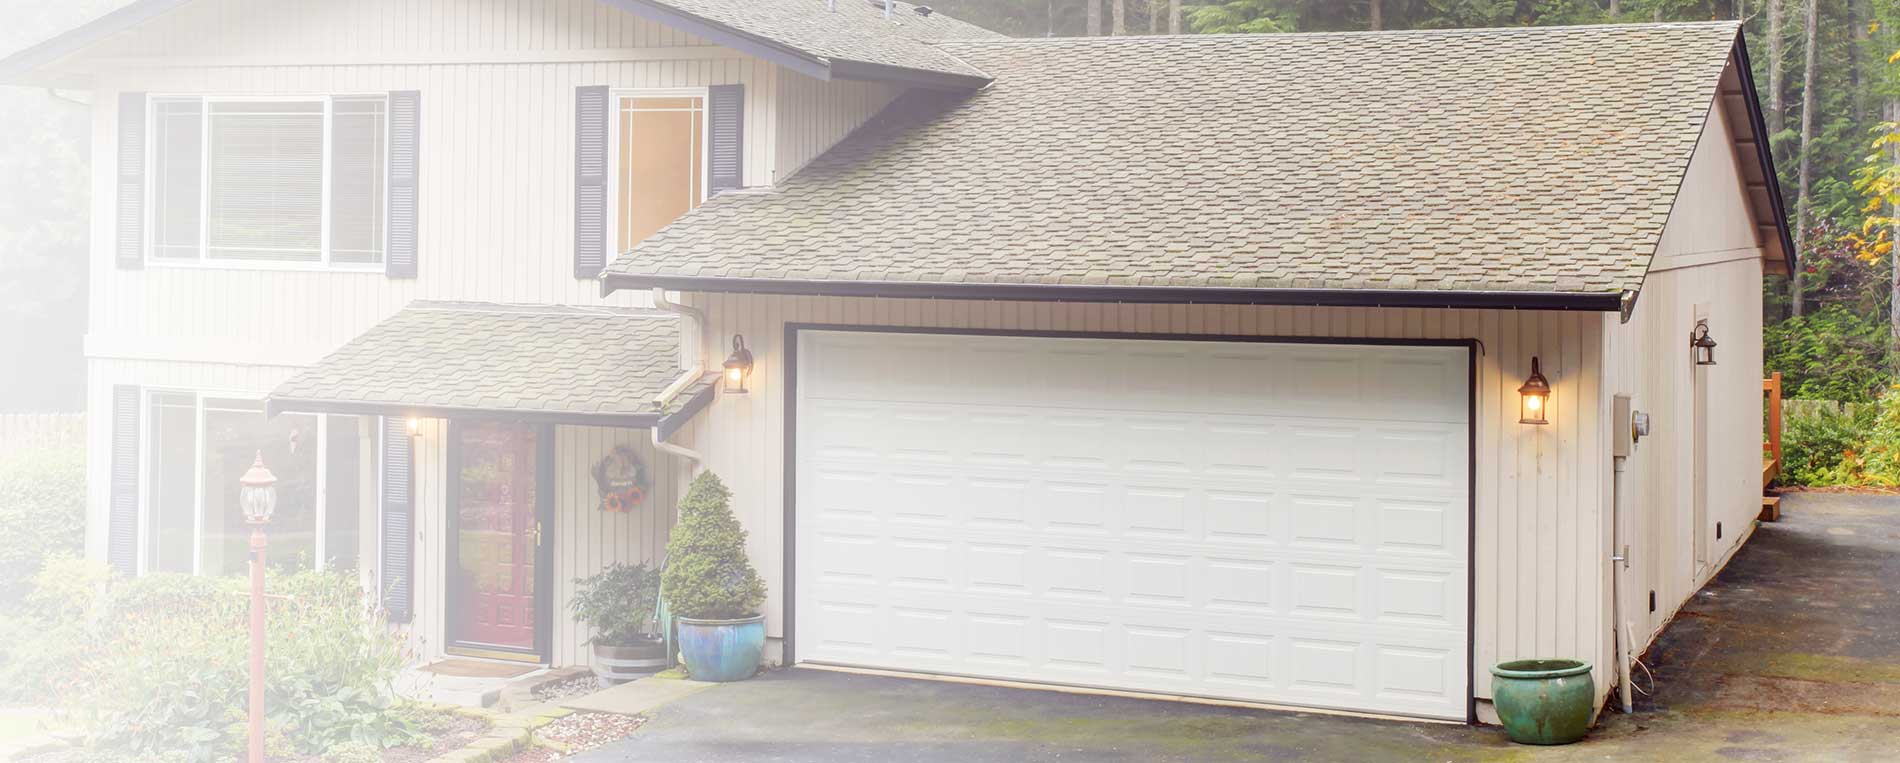 5 Reasons To Replace Your Garage Door